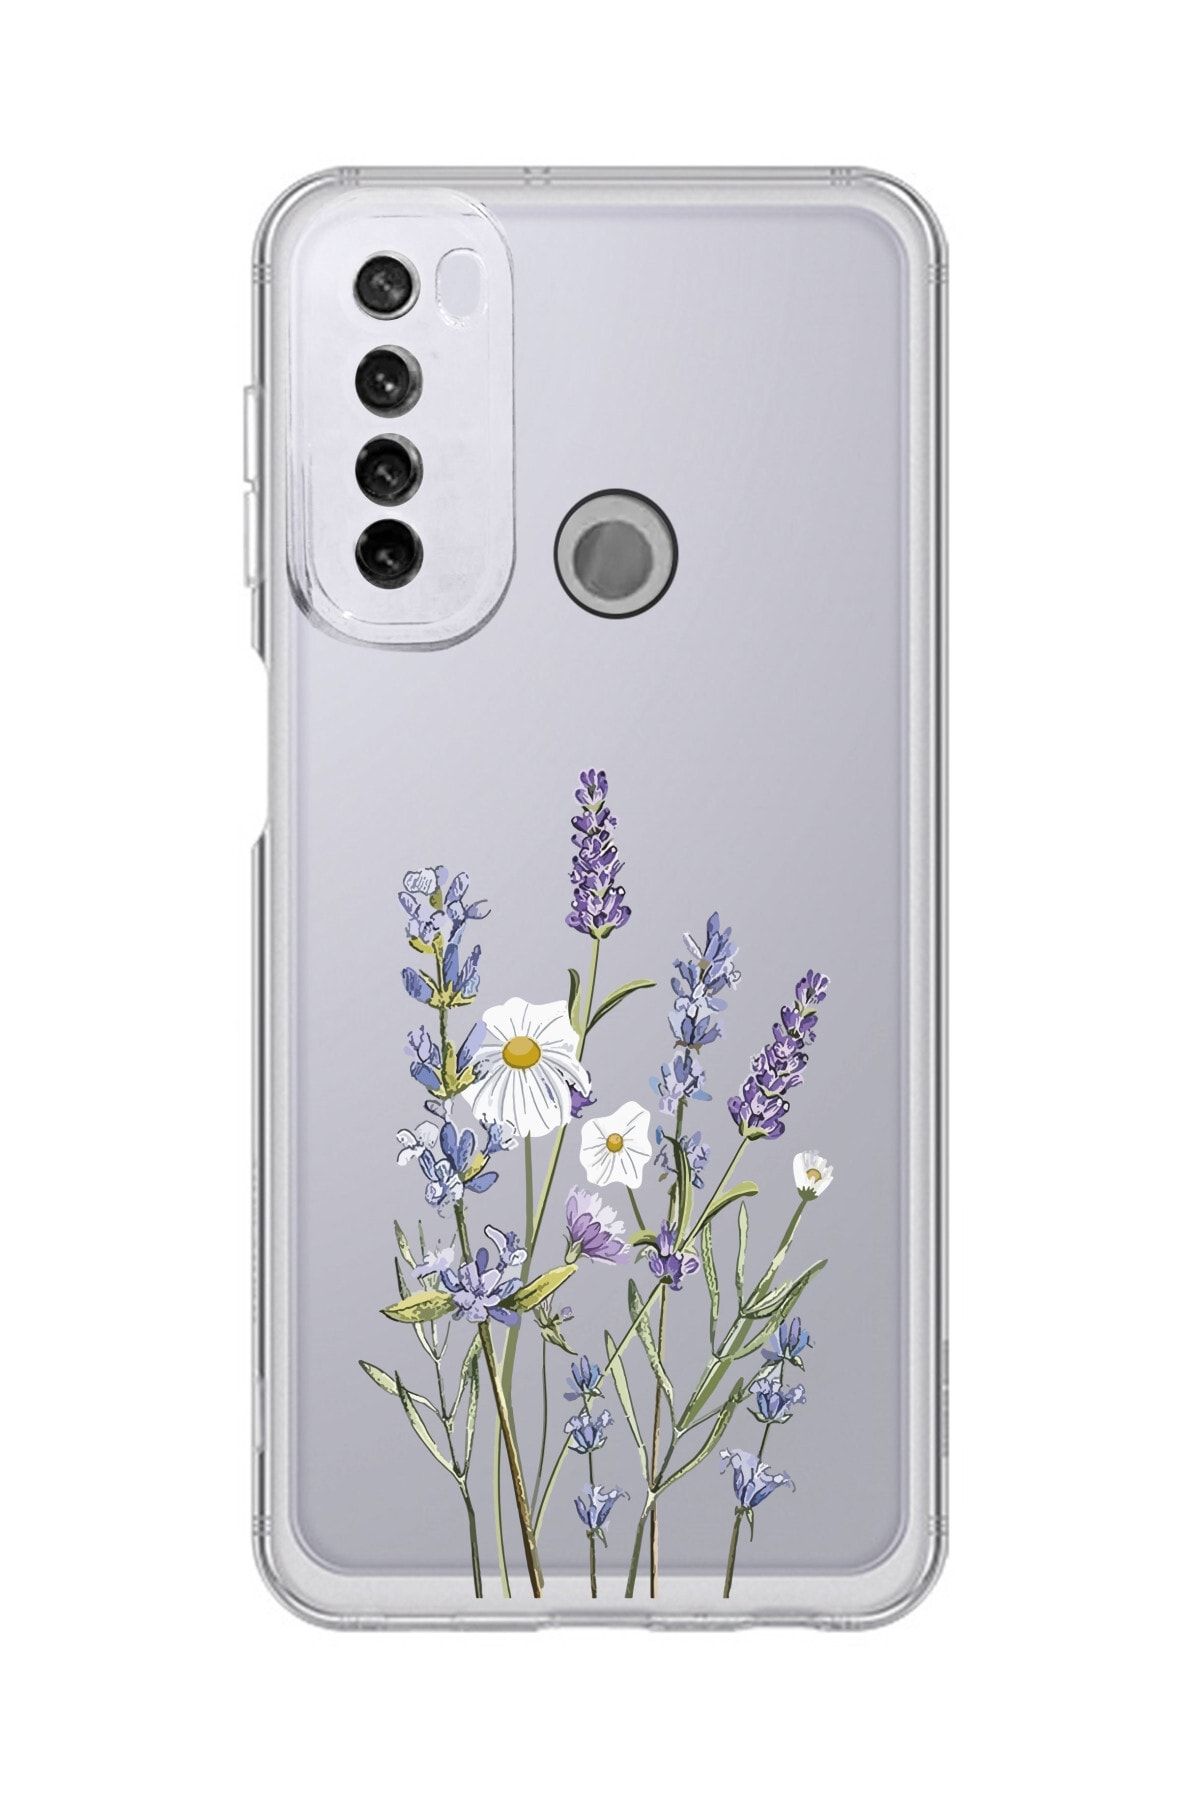 Tria Redmi Note 8 Telefon Kılıfı Baskılı Desenli Şeffaf Silikon Telefon Kılıfı